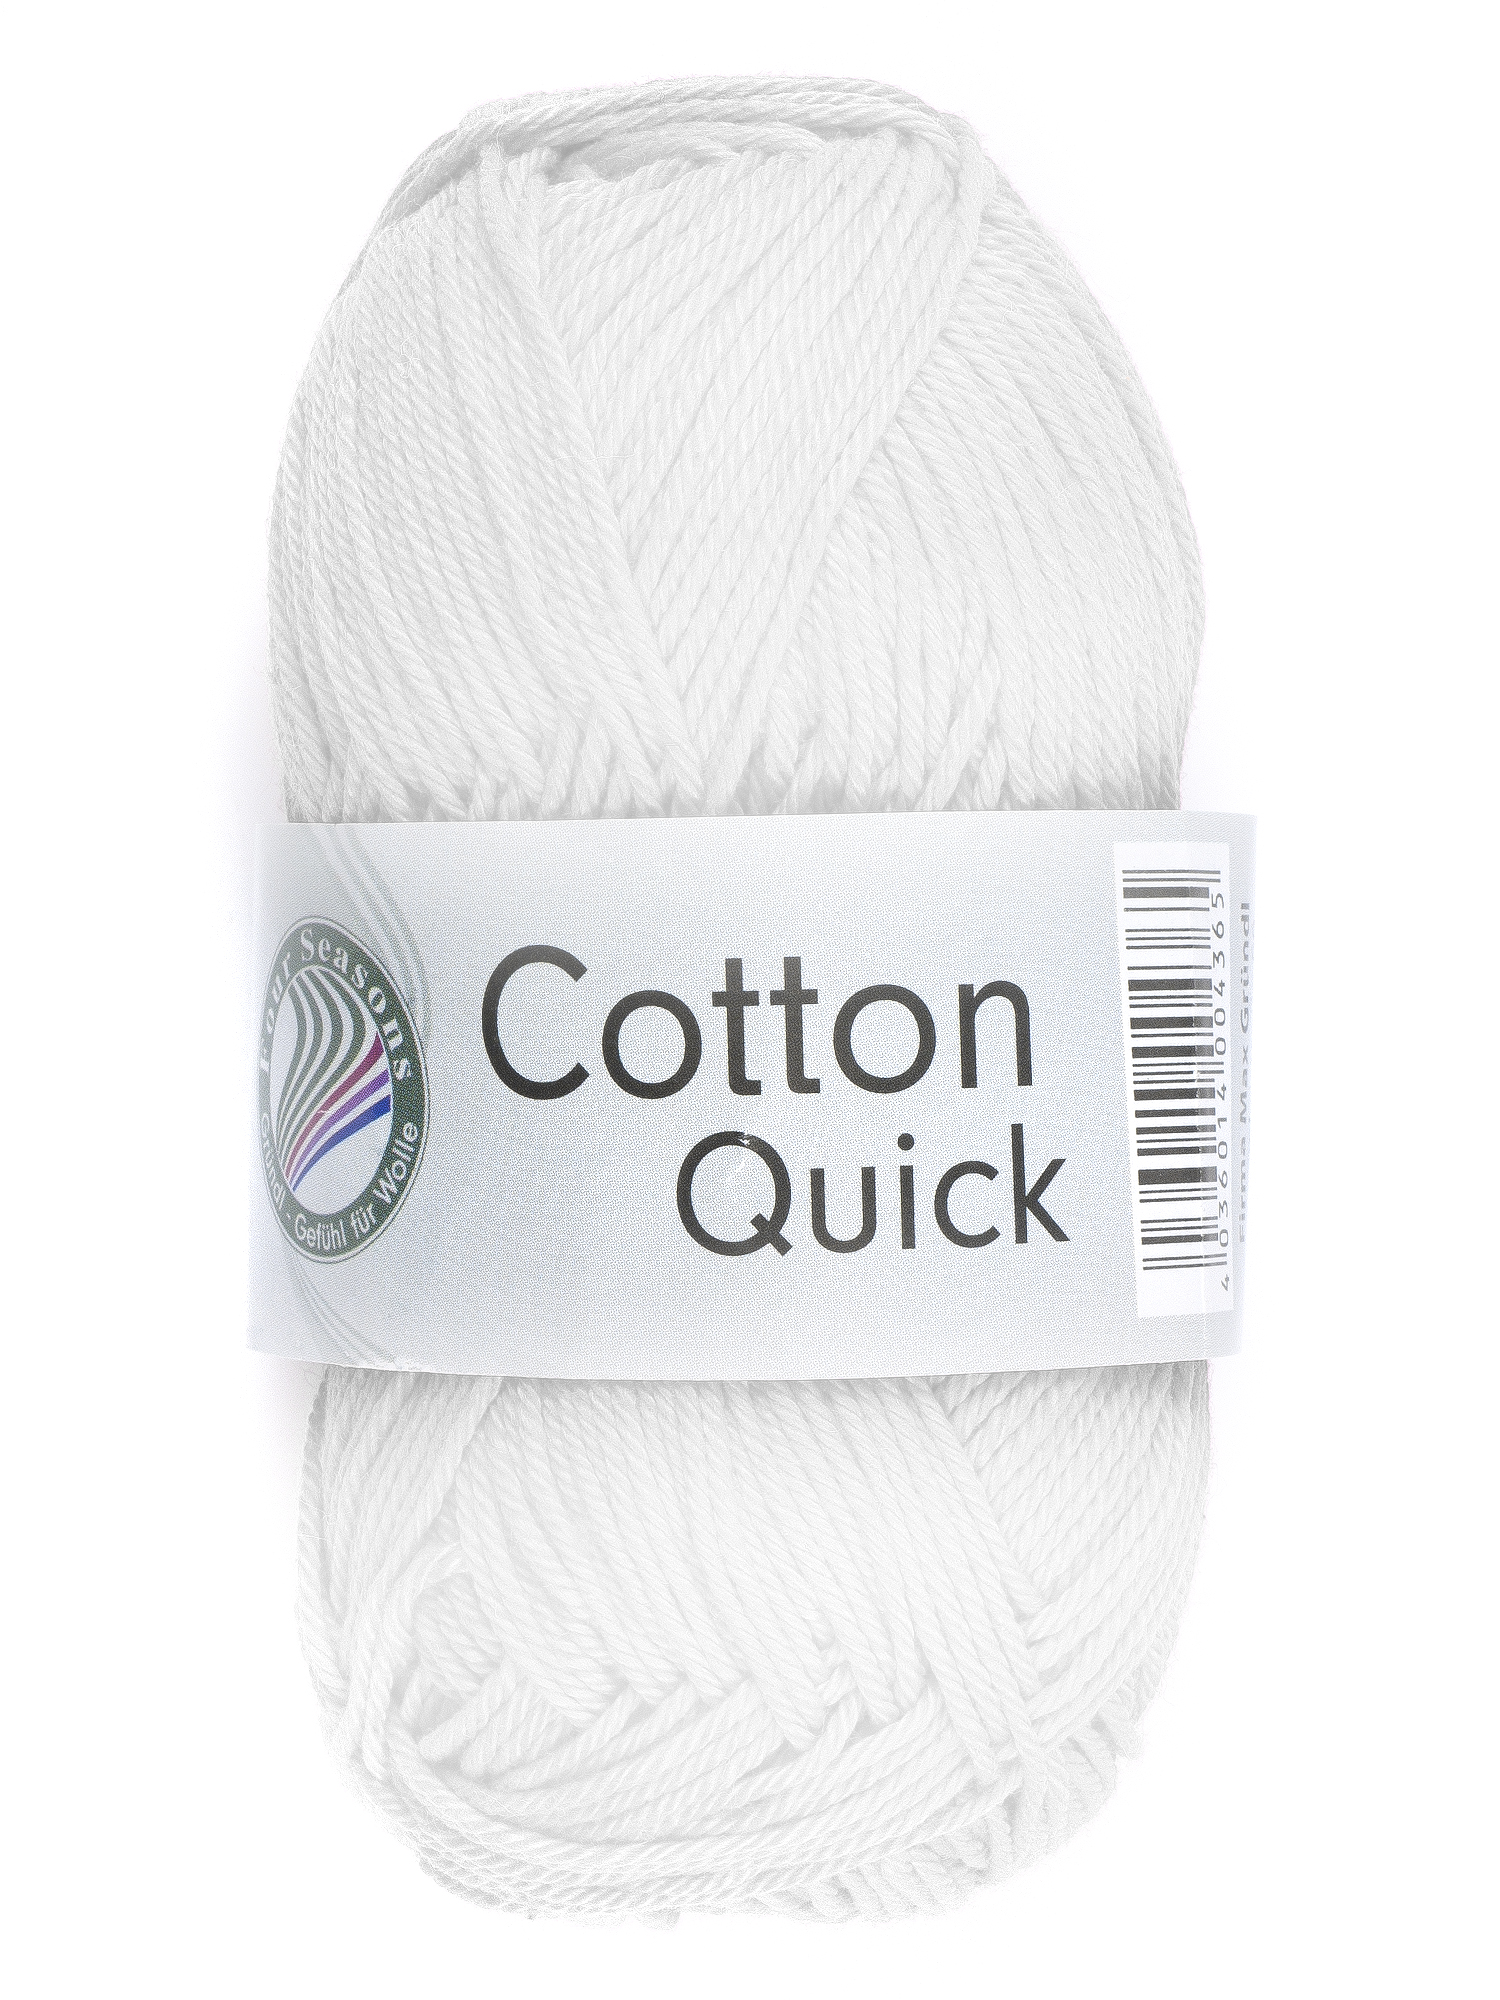 GRÜNDL Strickgarn Cotton Quick 50g weiß